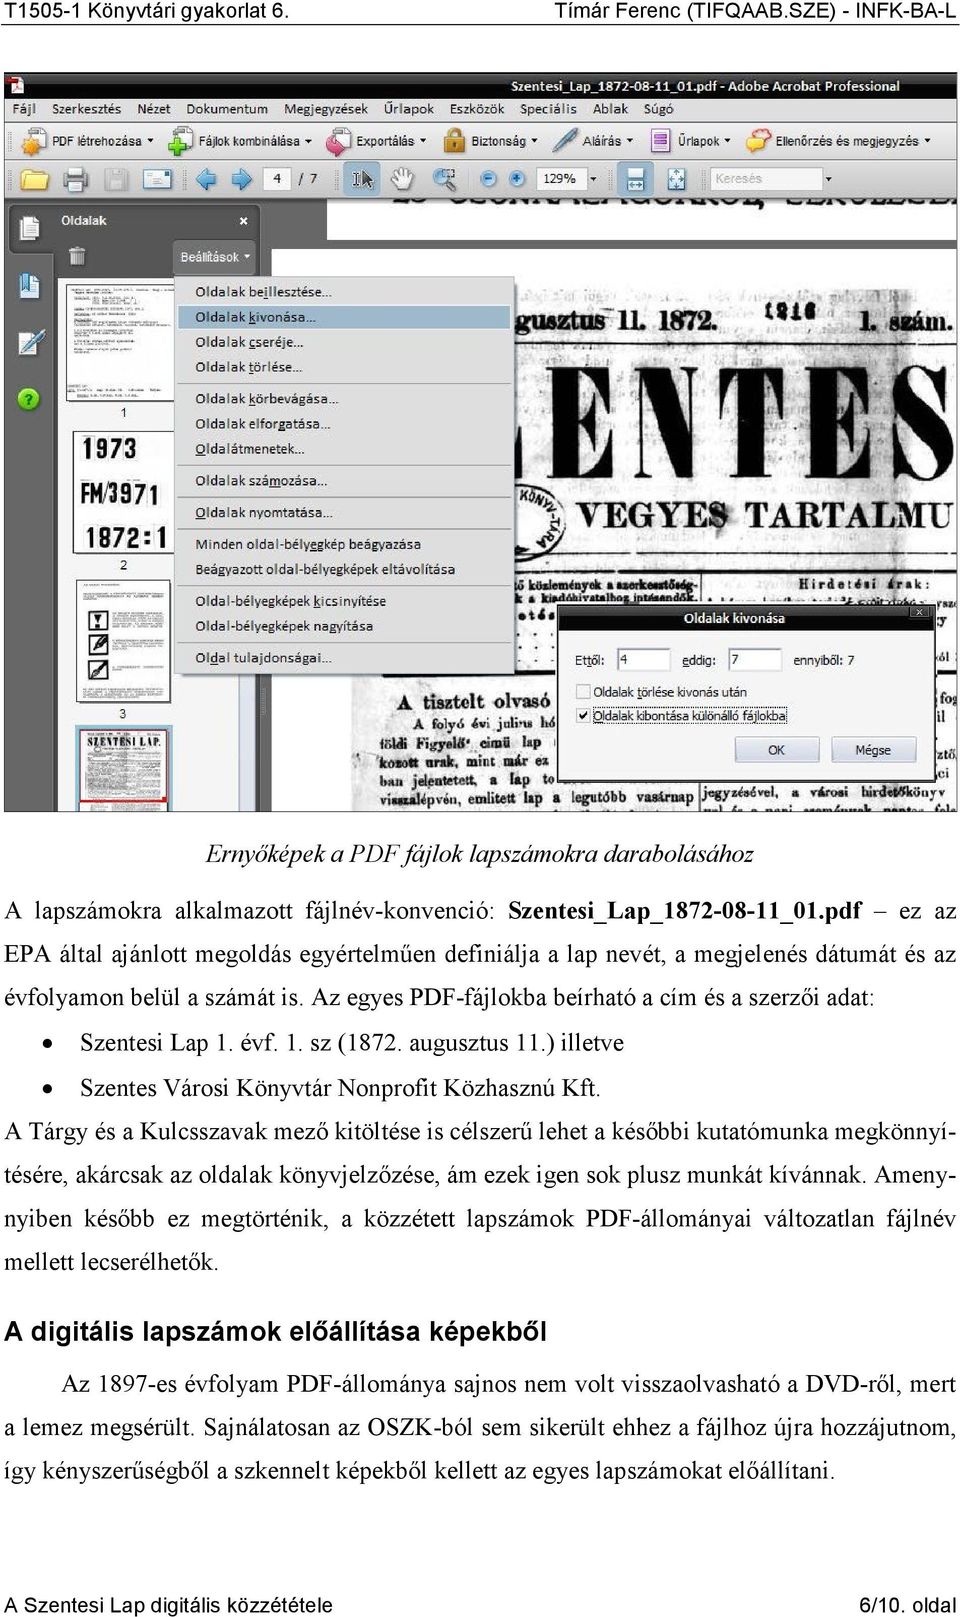 Az egyes PDF-fájlokba beírható a cím és a szerzıi adat: Szentesi Lap 1. évf. 1. sz (1872. augusztus 11.) illetve Szentes Városi Könyvtár Nonprofit Közhasznú Kft.